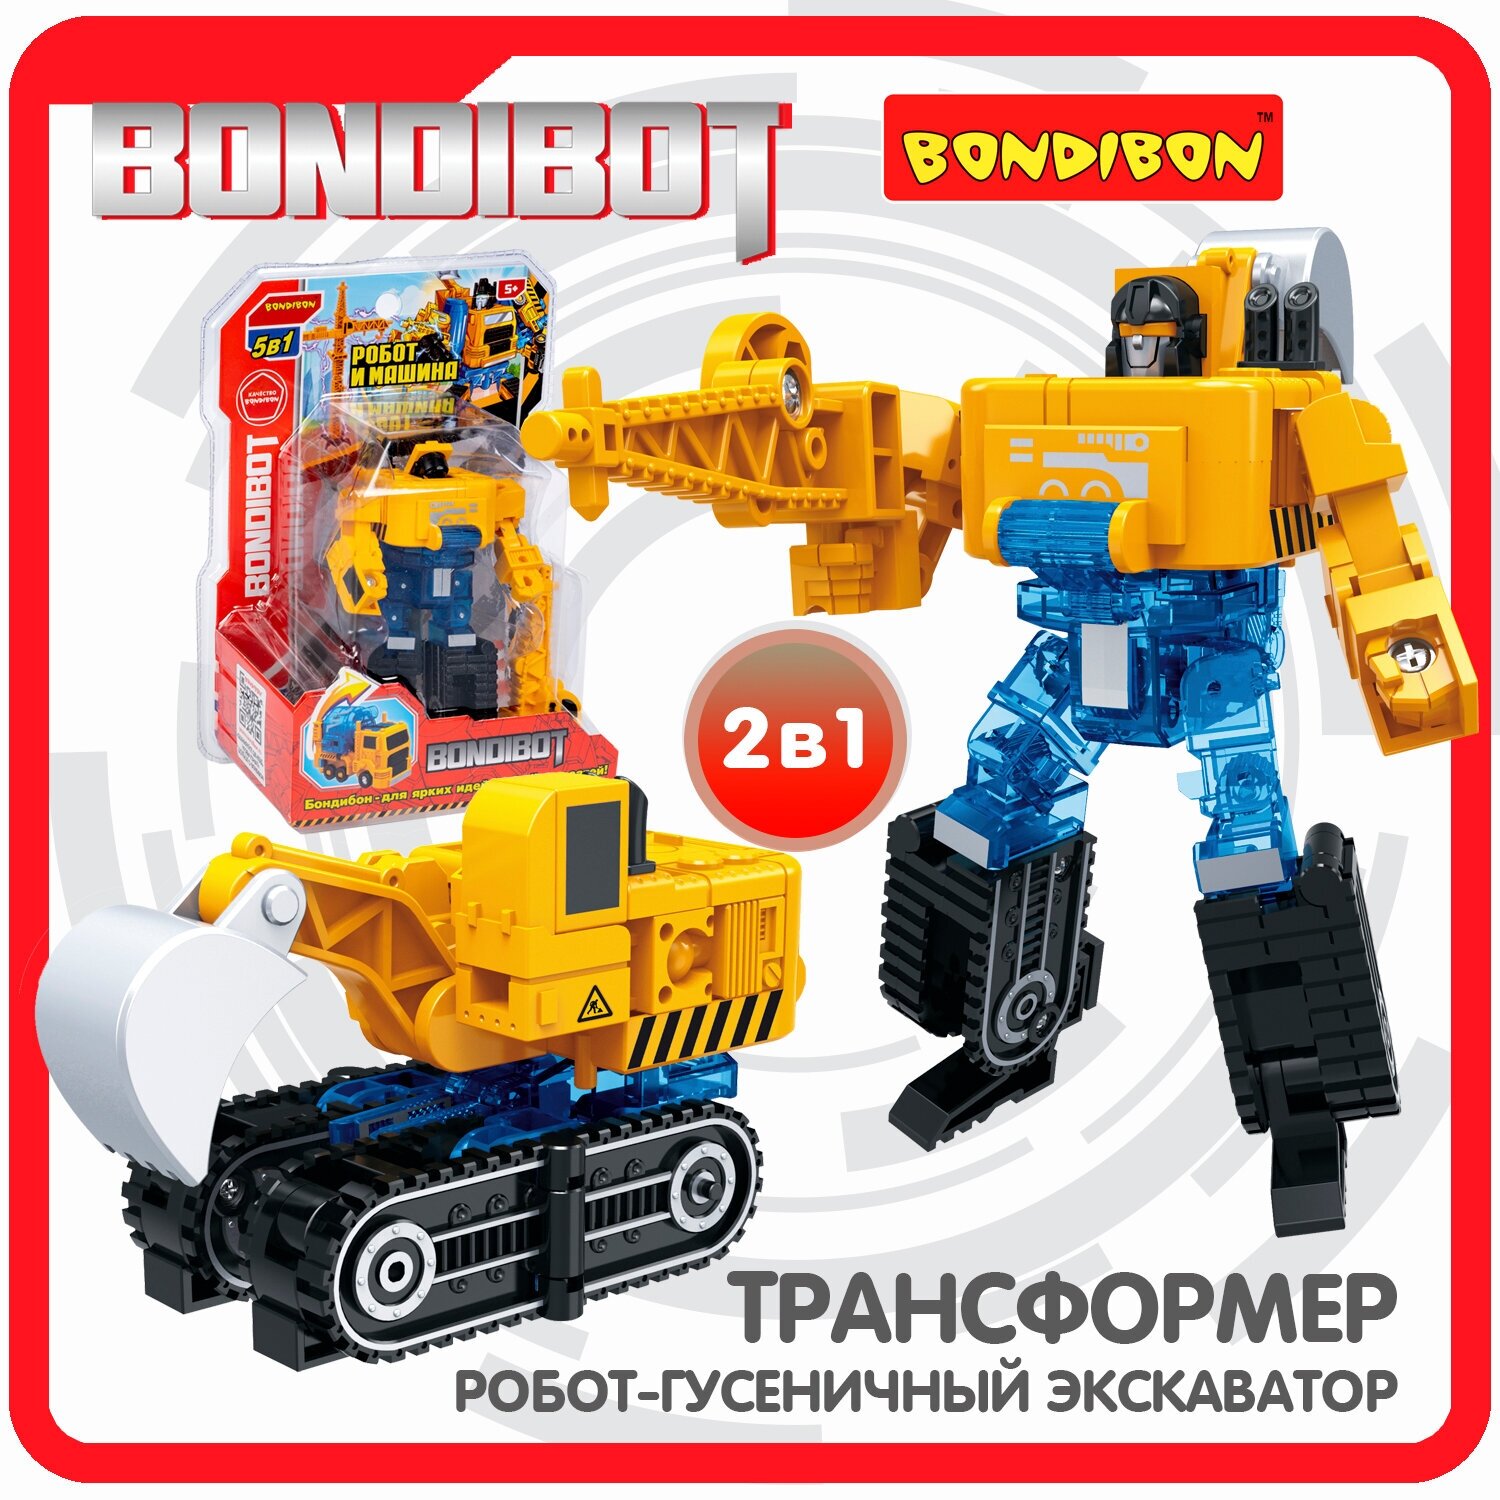 Трансформер 2в1 BONDIBOT робот Bondibon строительная техника транспорт детские игрушки гусеничный экскаватор